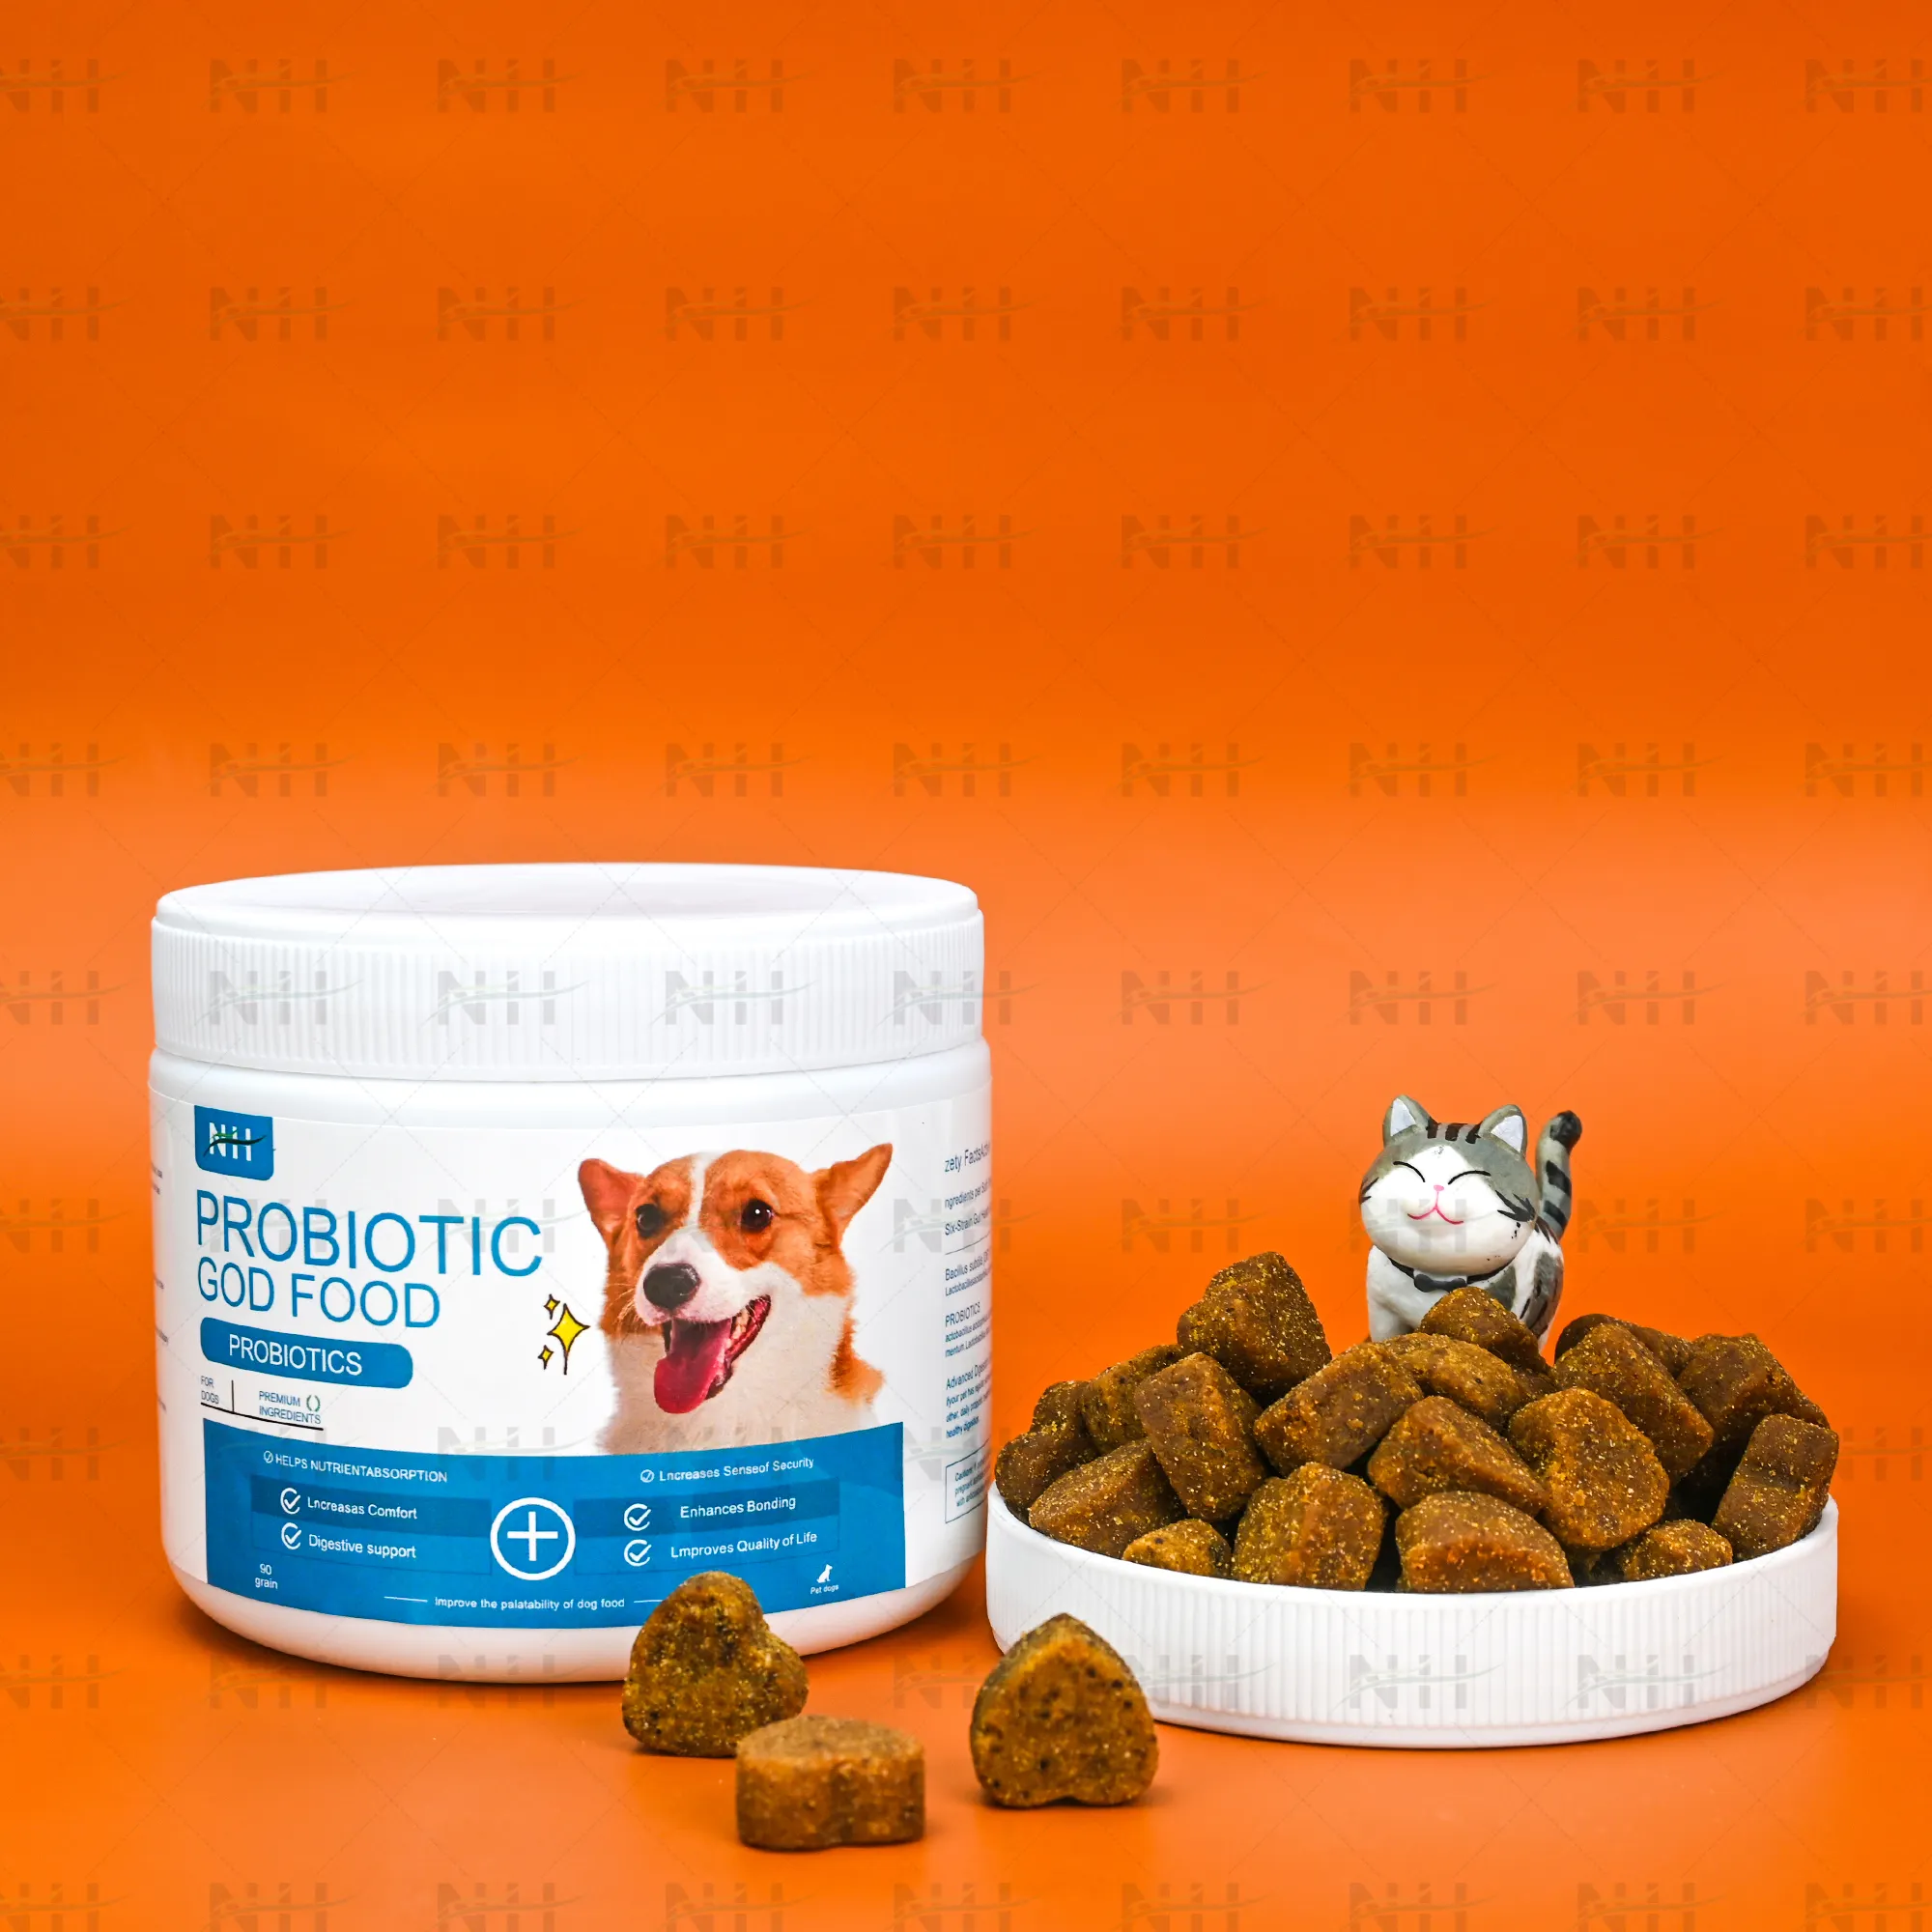 Cibo probiotico per cani probiotico di alta qualità supporto digestivo cane probiotico integratore migliora il legame di cane probiotici masticazioni